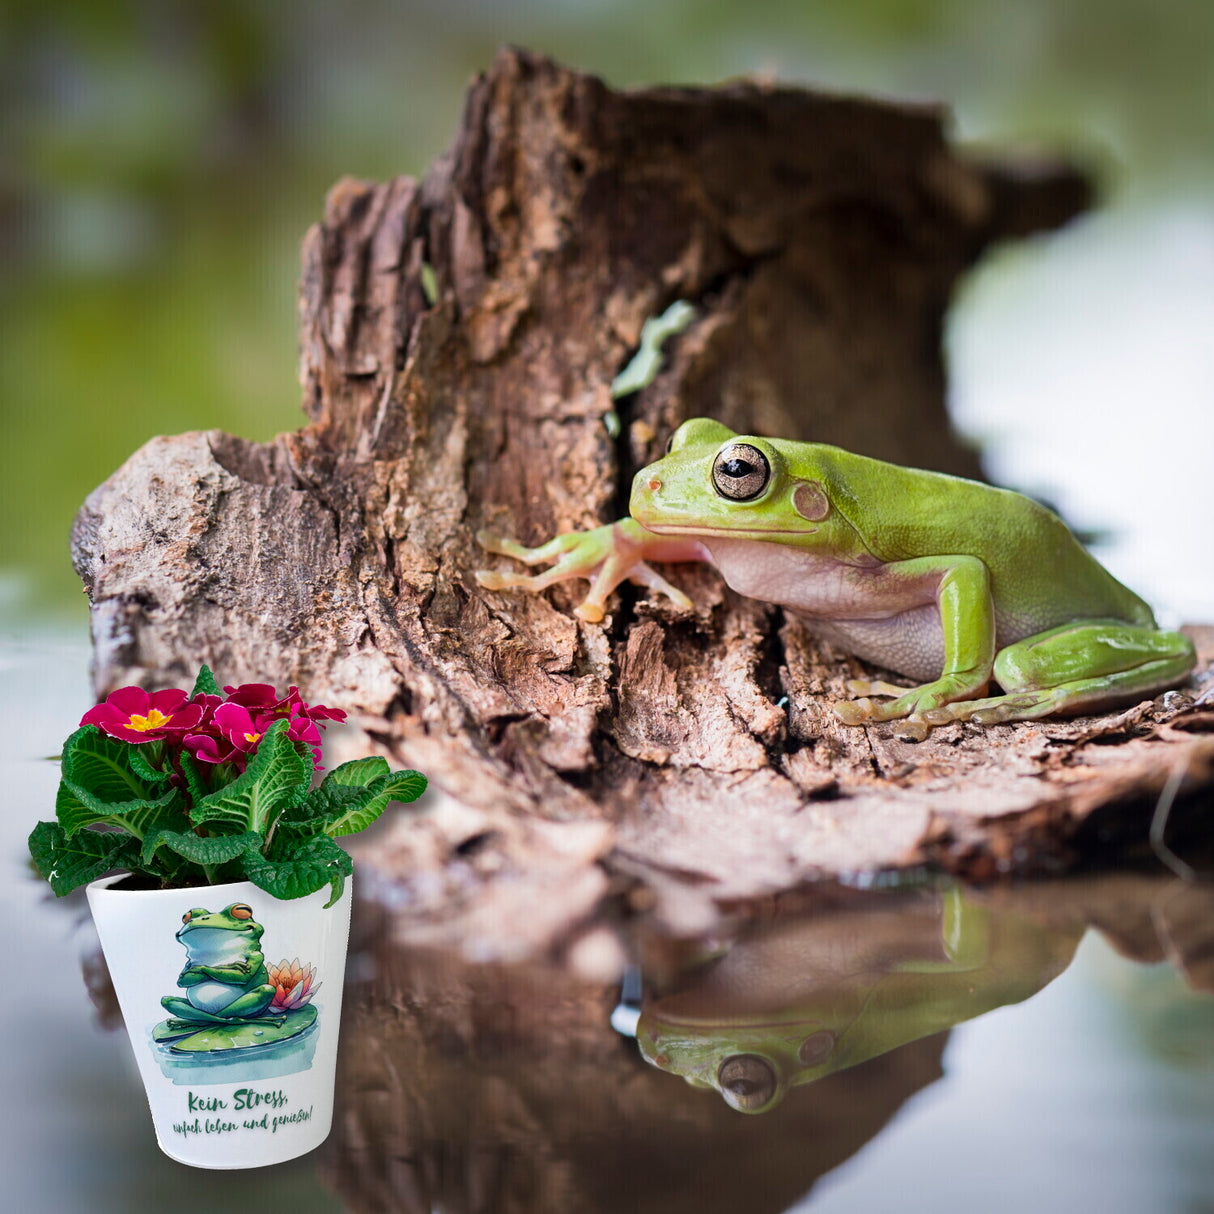 Frosch auf Seerose Blumentopf mit Spruch Kein Stress einfach leben und genießen